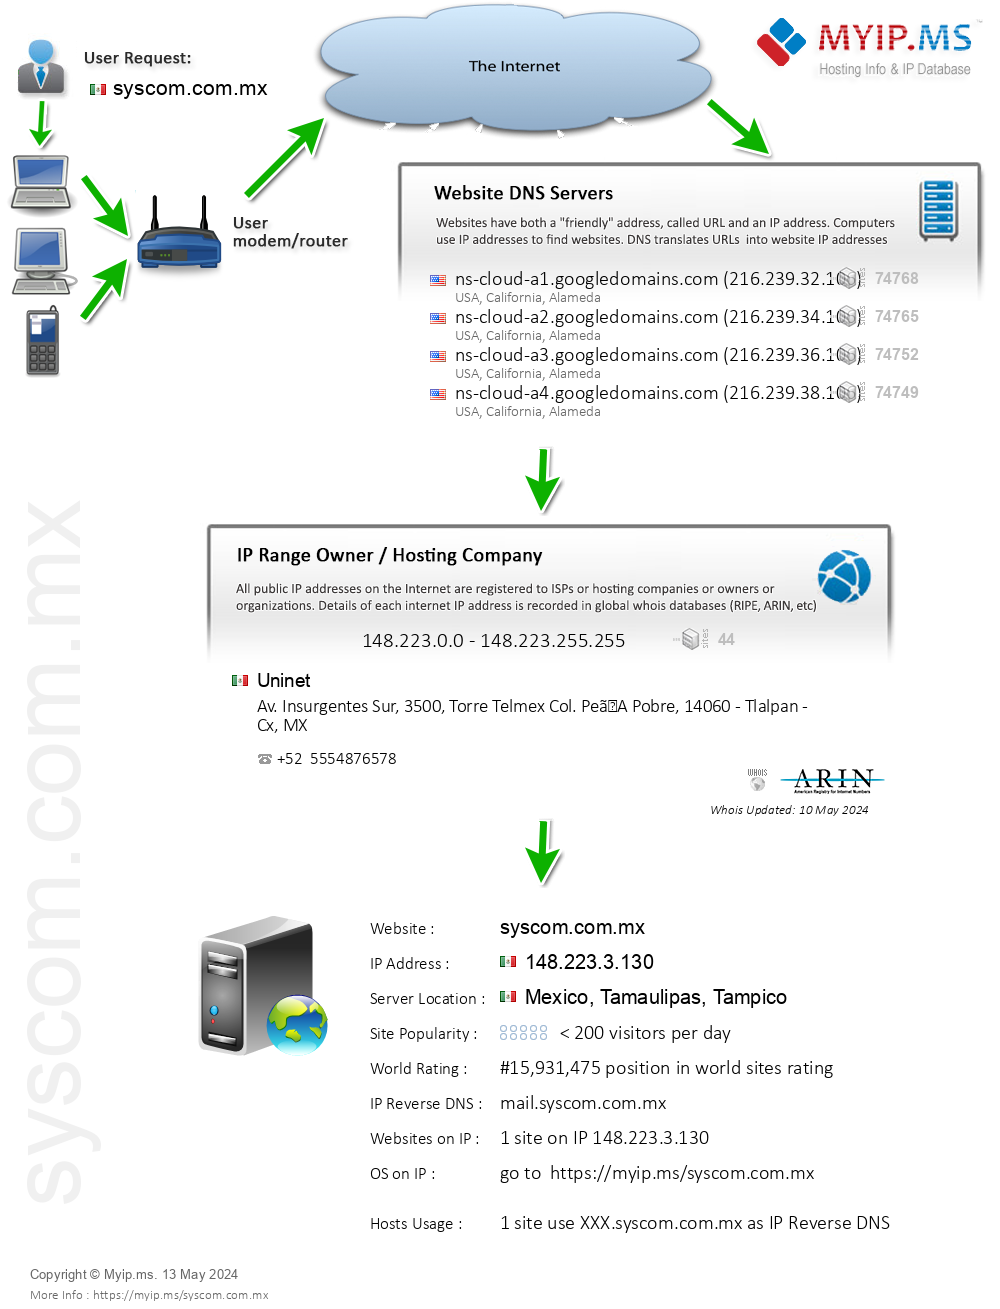 Syscom.com.mx - Website Hosting Visual IP Diagram